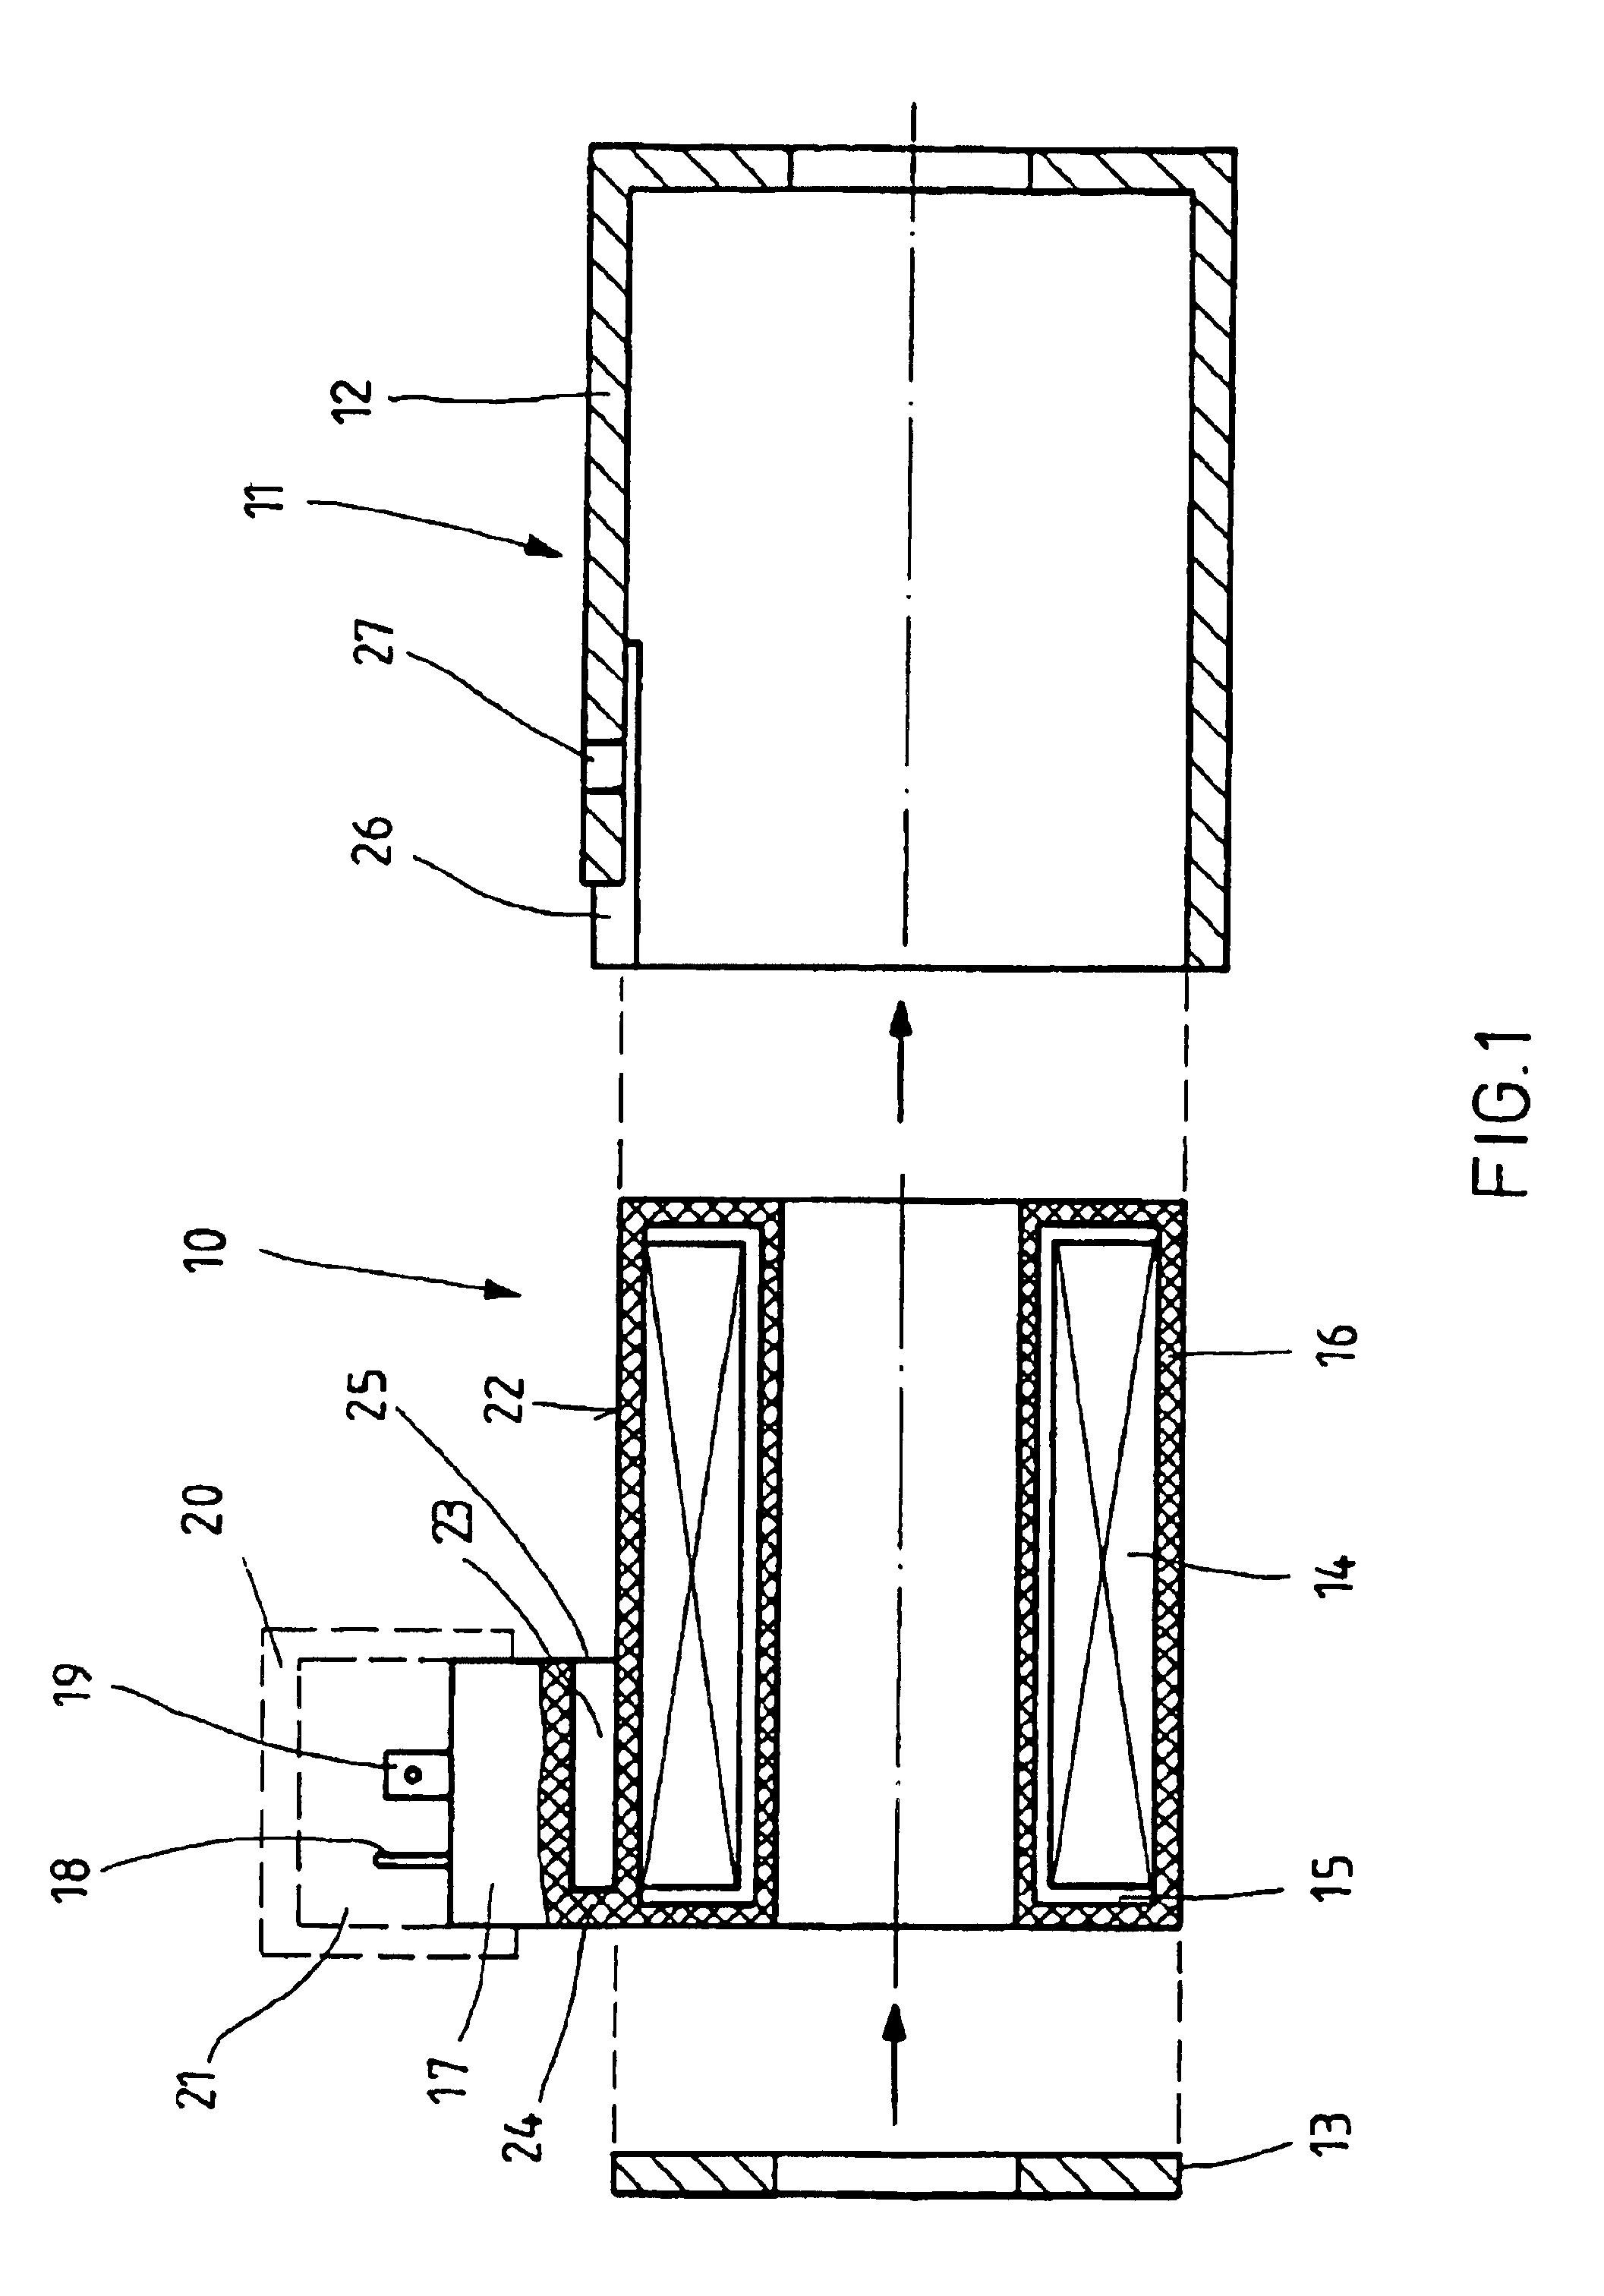 Magnet coil arrangement